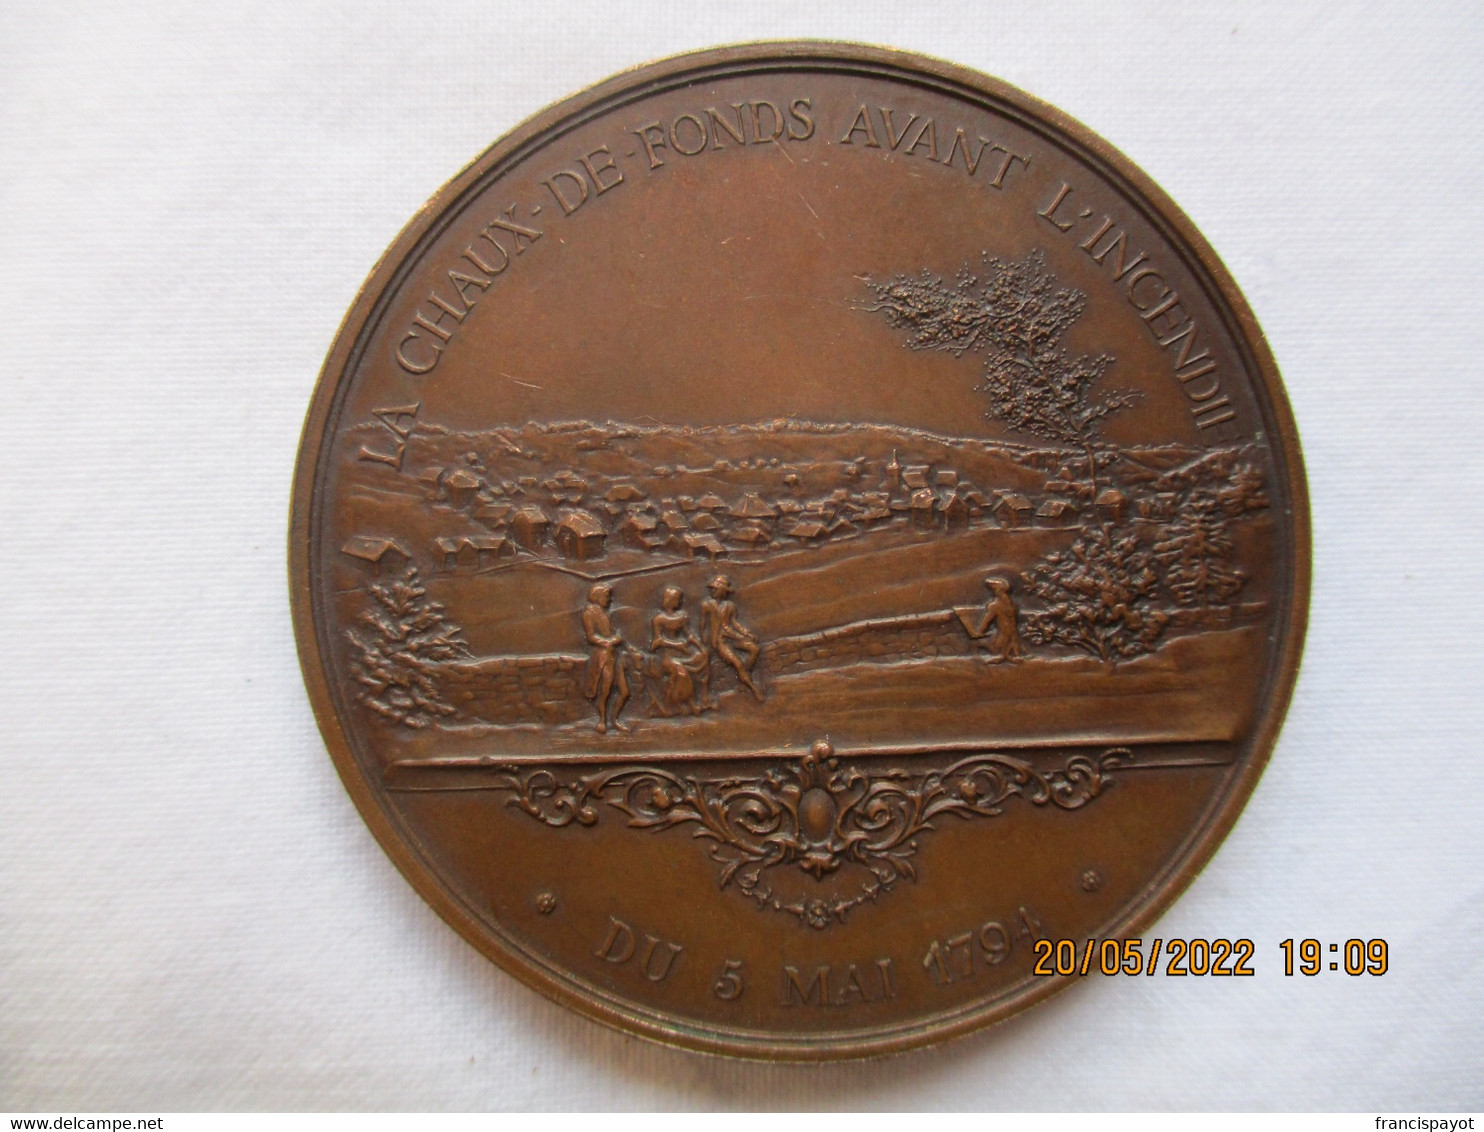 Suisse: Médaille Honneur Et Travail, Centenaire De L'incendie De La Chaux-de-Fonds 1894 - Professionnels / De Société